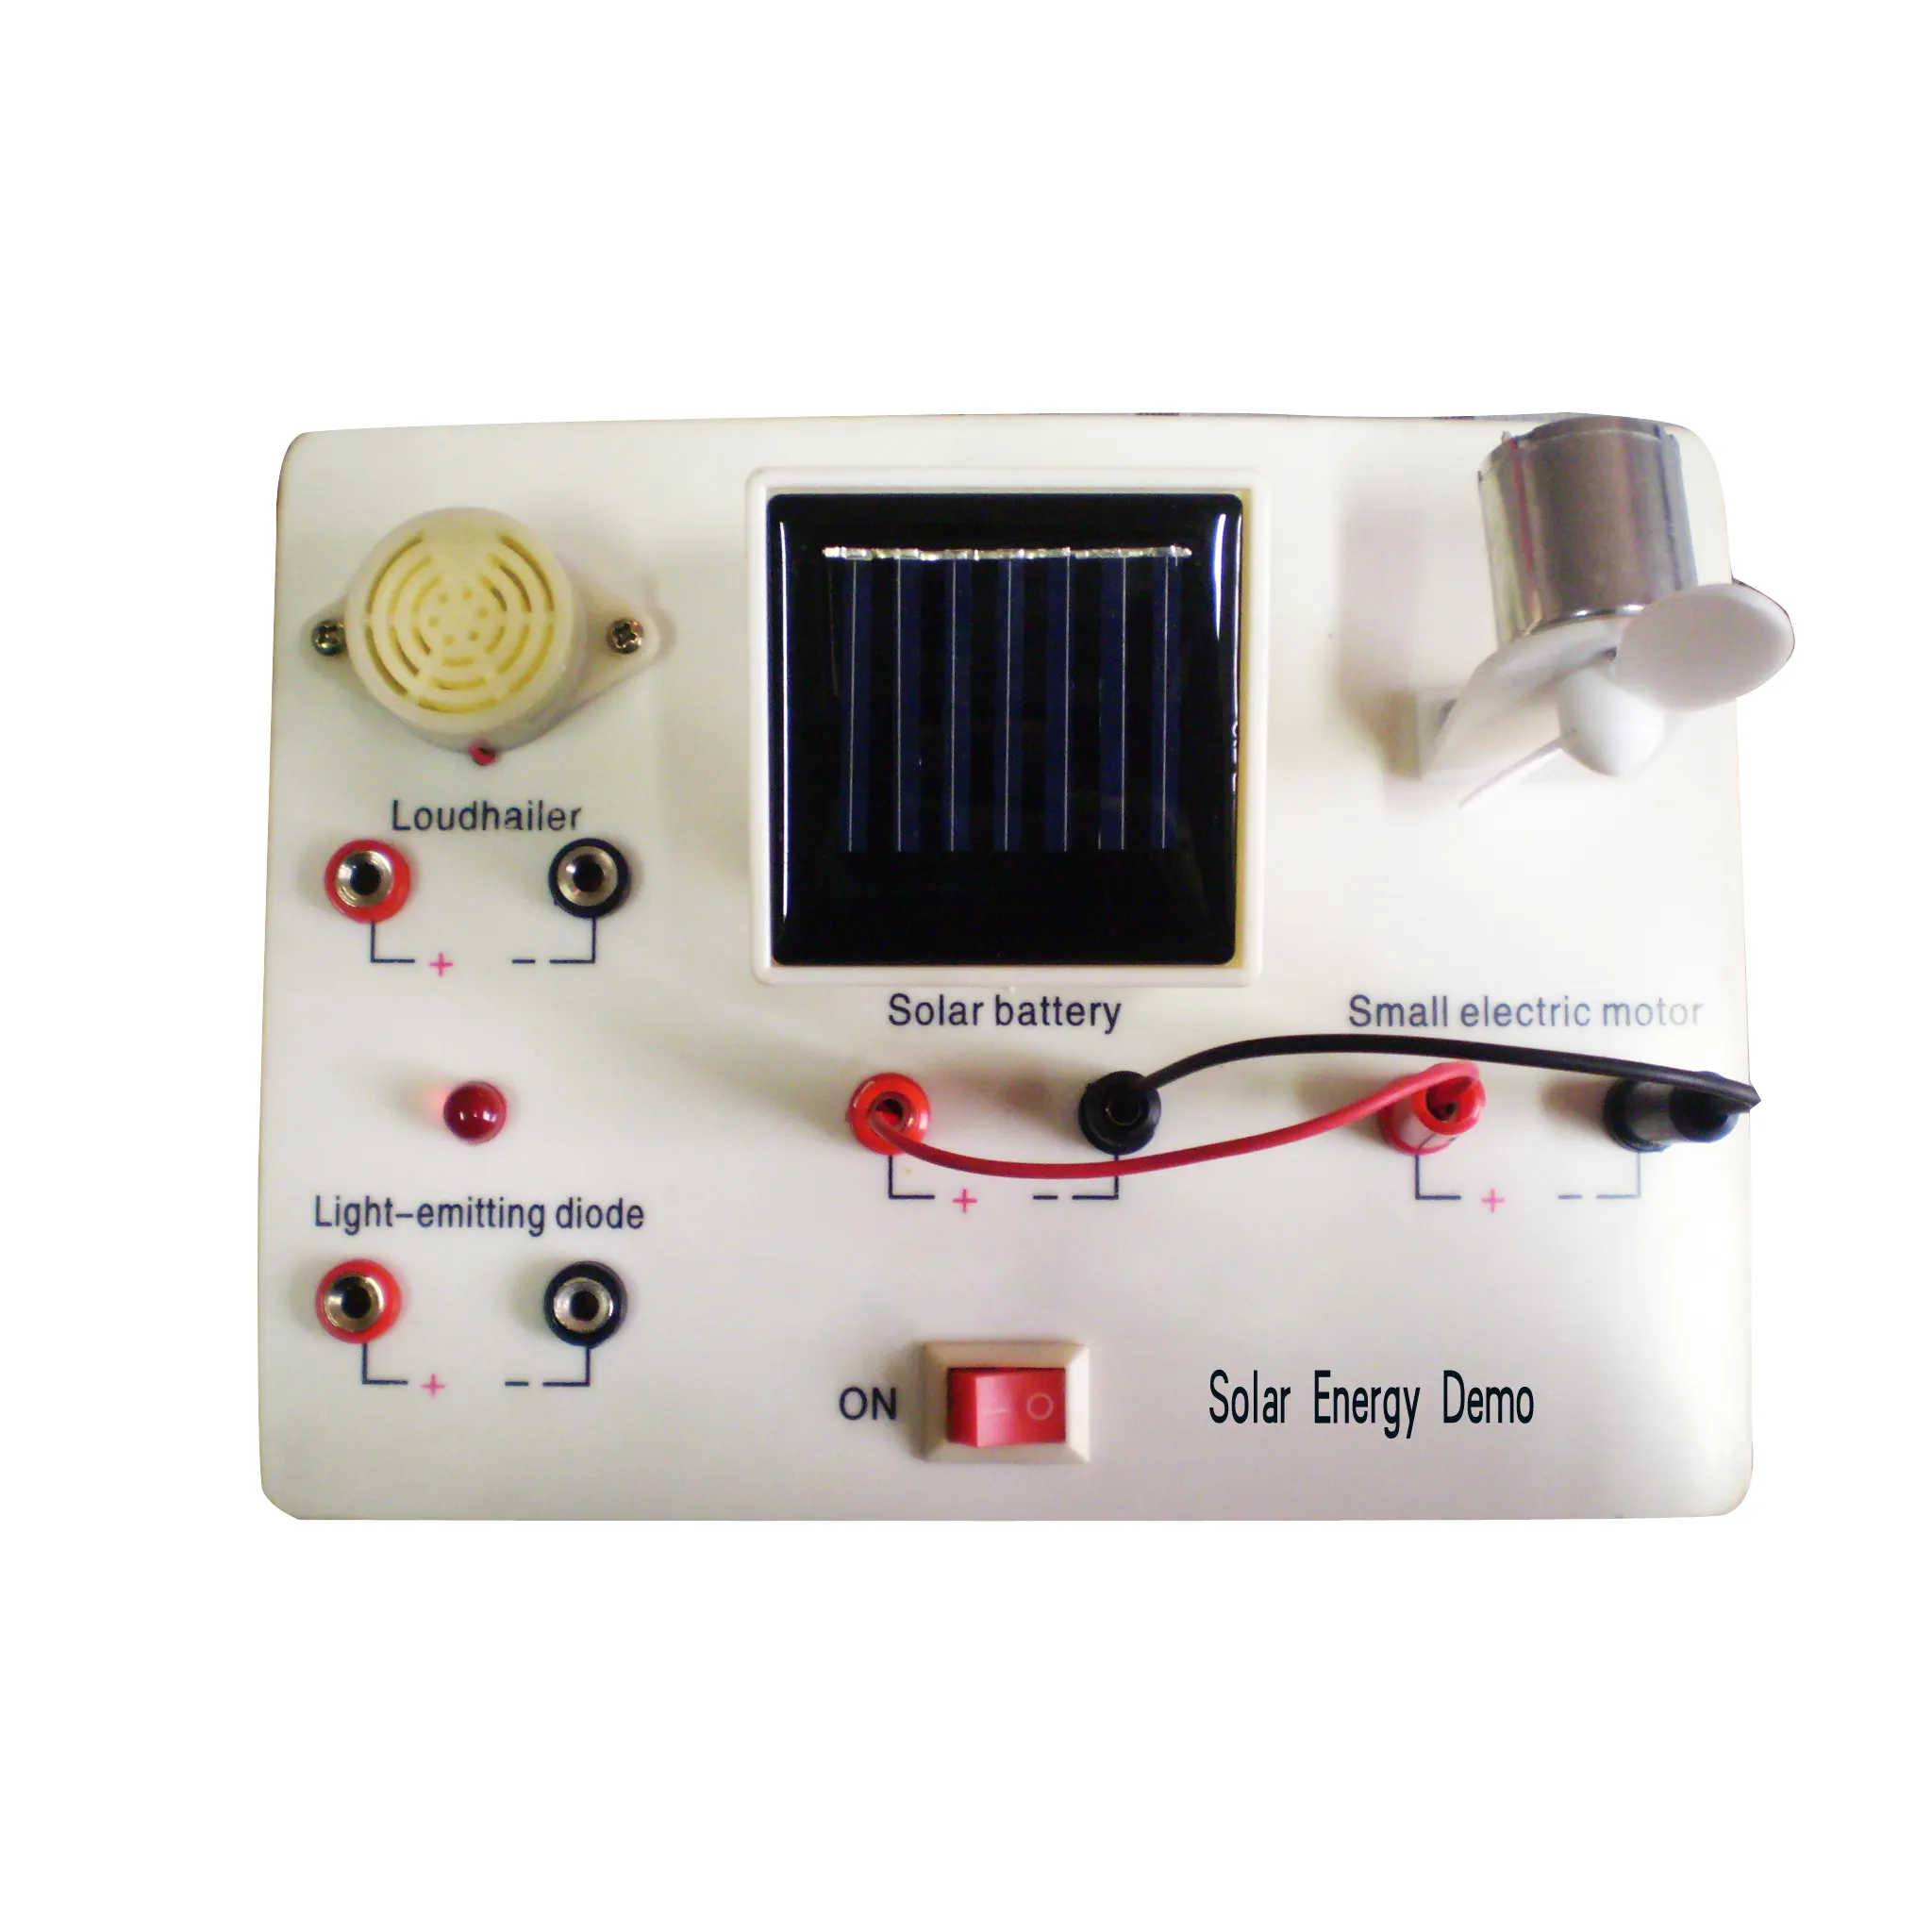 Gelsonlab HSPEN-016 Güneş Enerjisi Tanıtım, Güneş Enerjisi için gösteri öğretim kullanımı